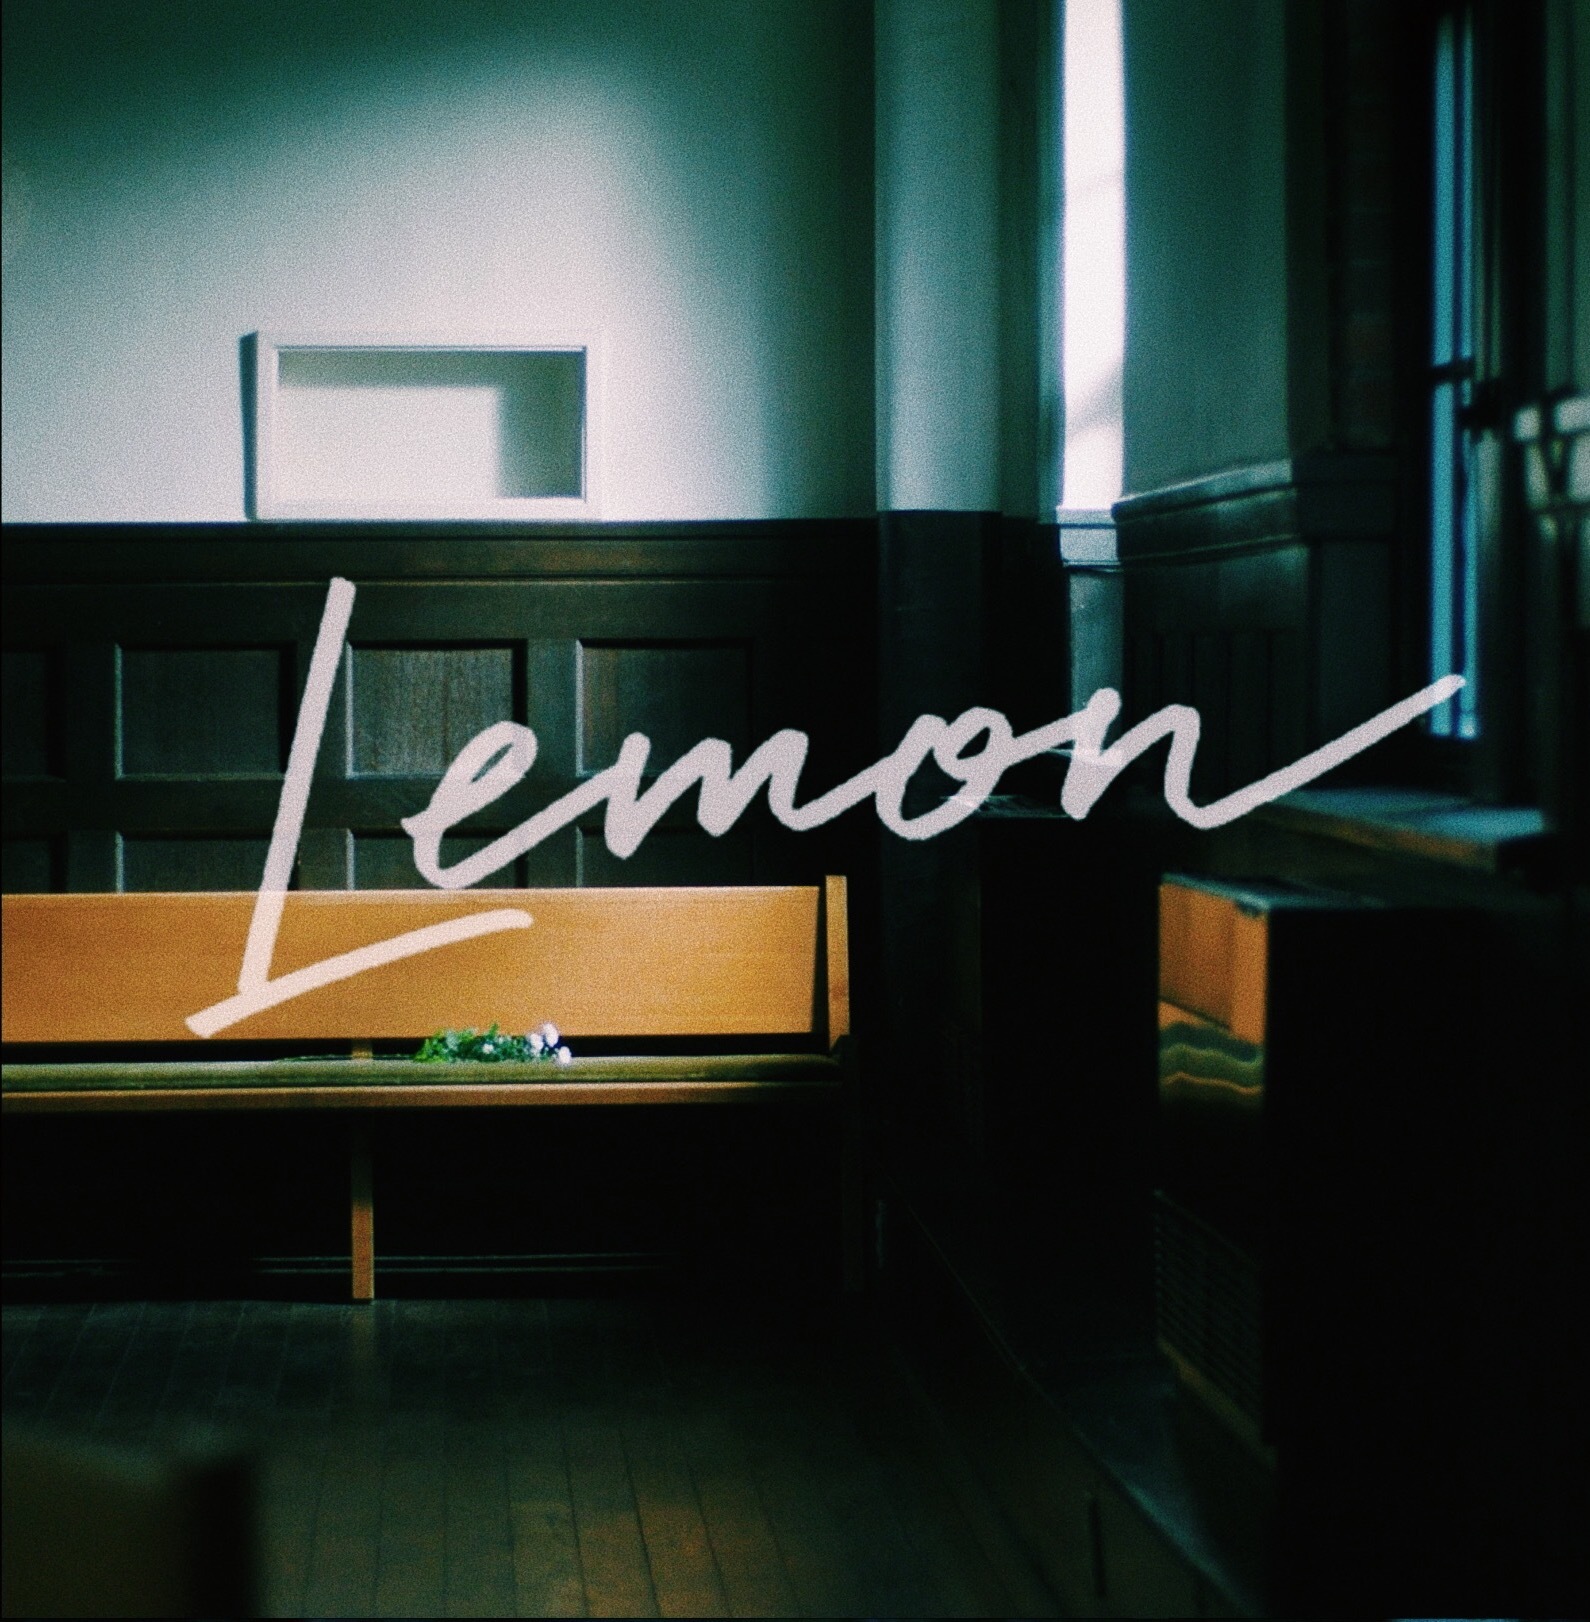 米津玄師「Lemon」MV サムネイル